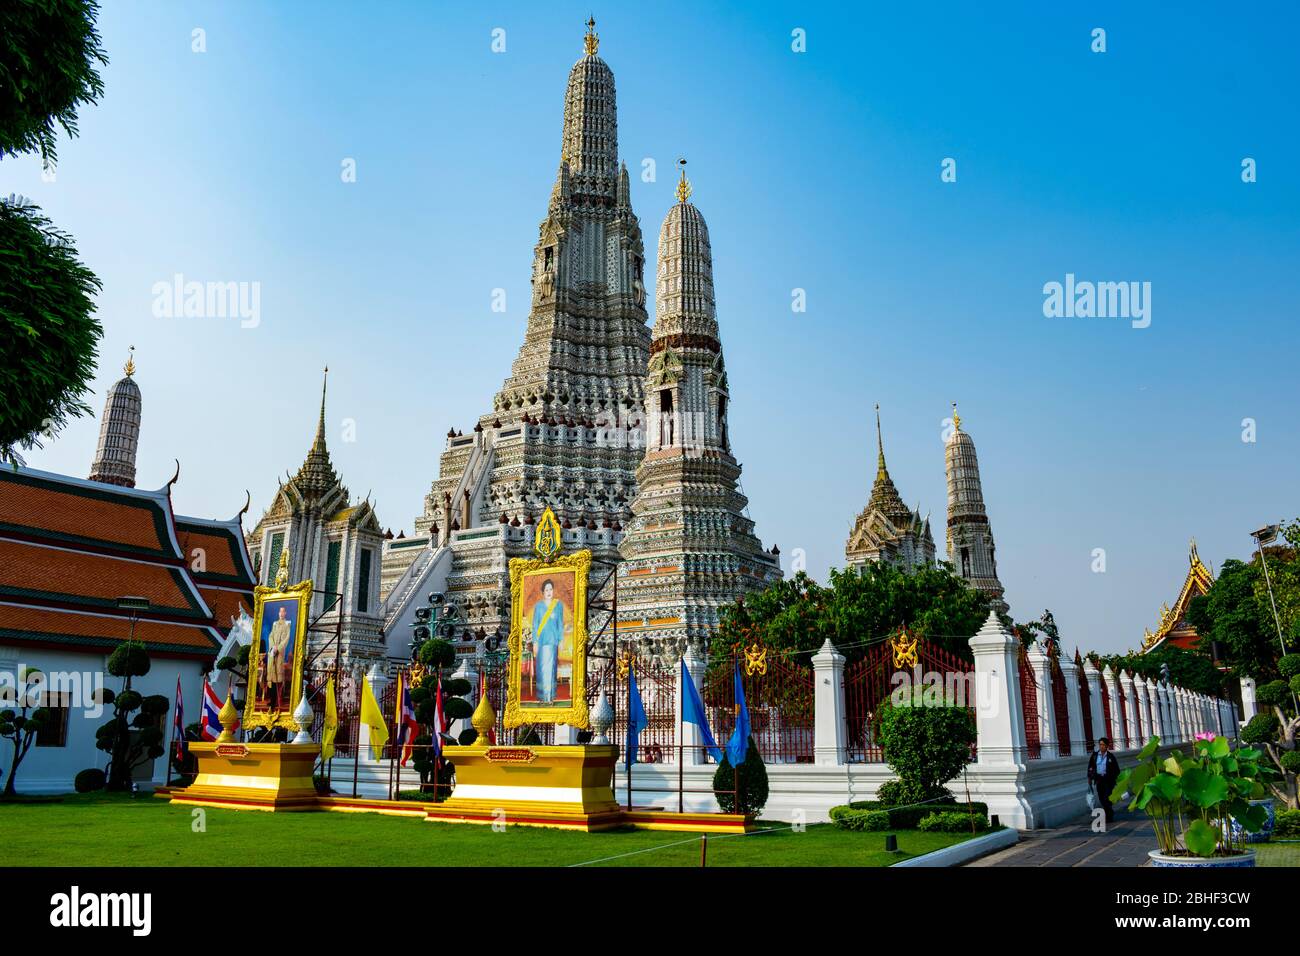 Thailandia, Bangkok - 12. januar 2019 - der Wat Arun in Bangkok Stockfoto